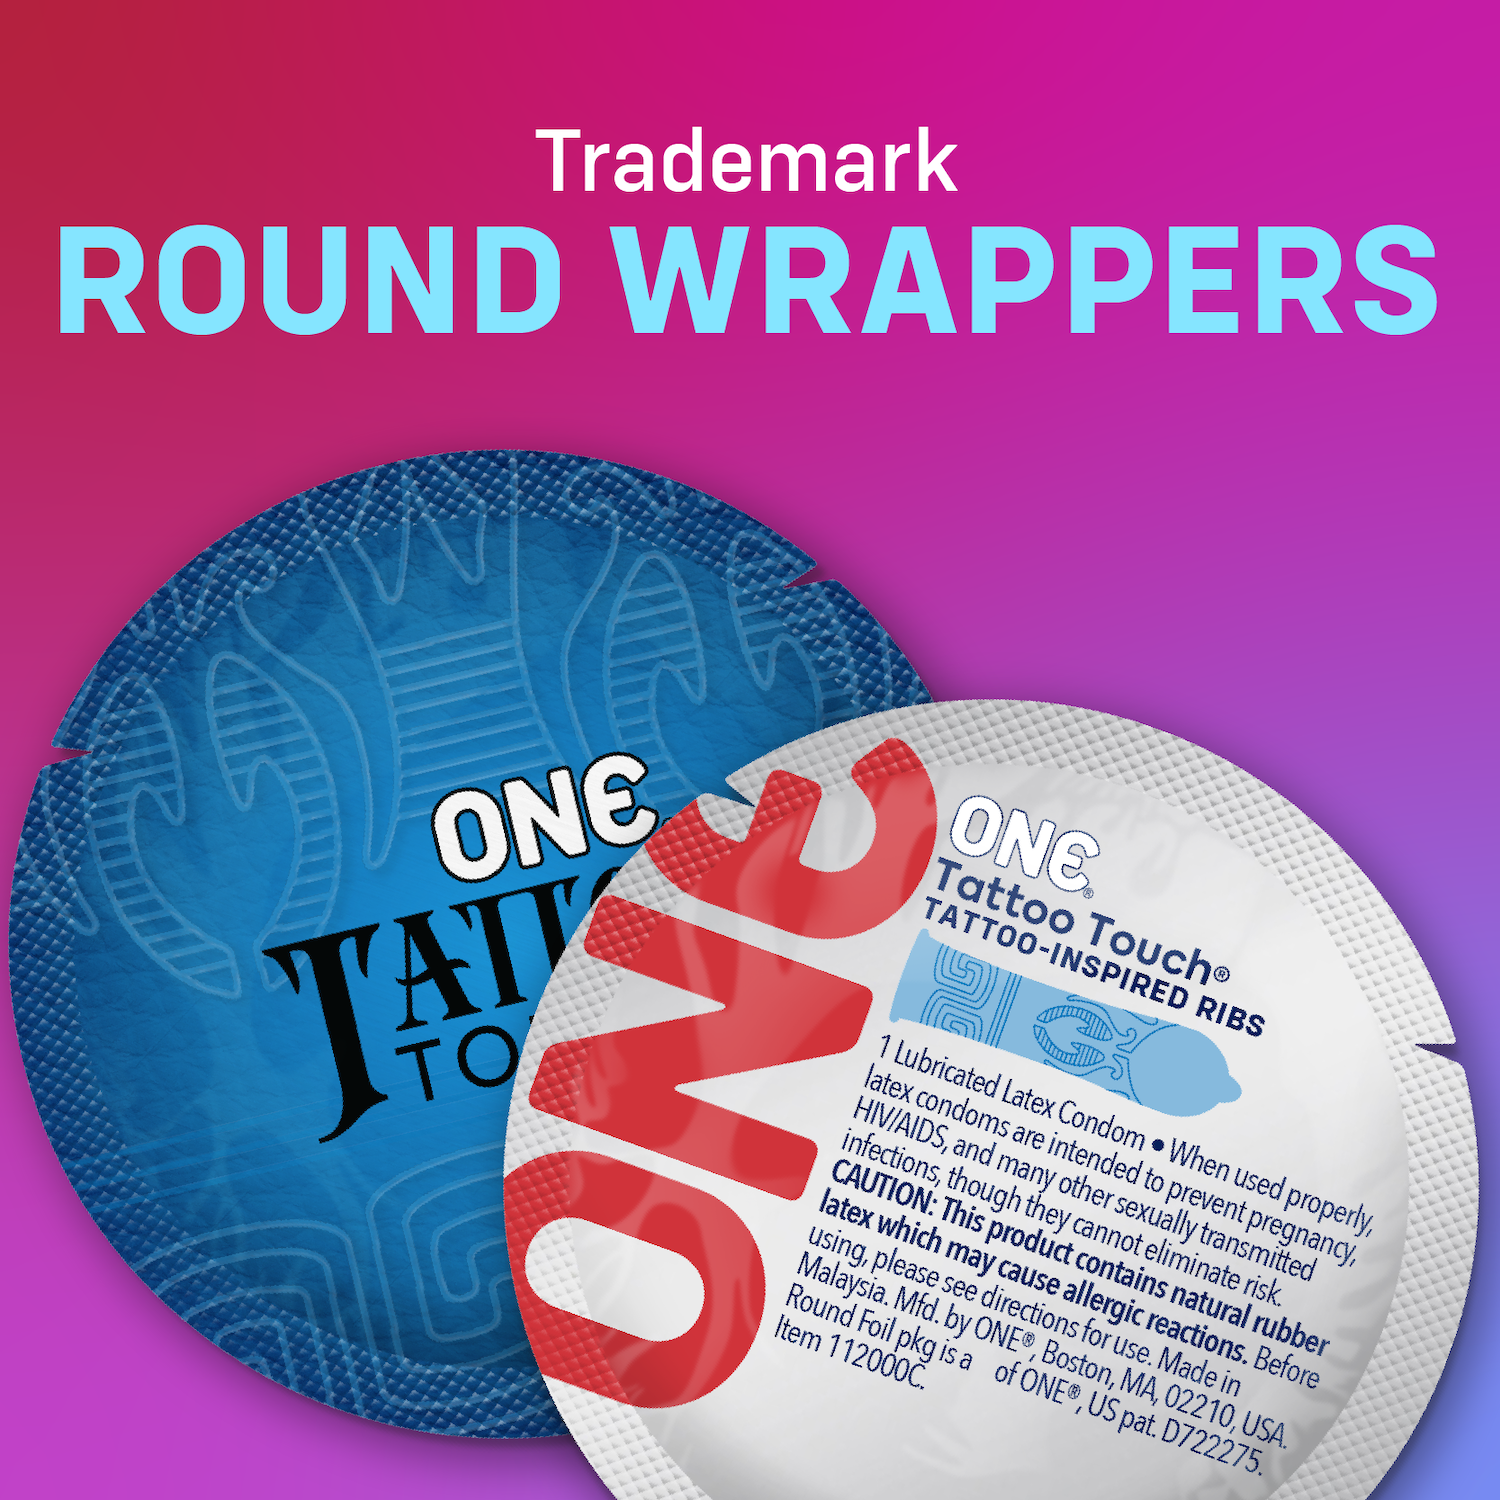 ONE «Tattoo Touch» 12 gemusterte Kondome mit Tattoo-Design auf dem Kondom - vegan & ohne schädlichen Inhaltsstoffe